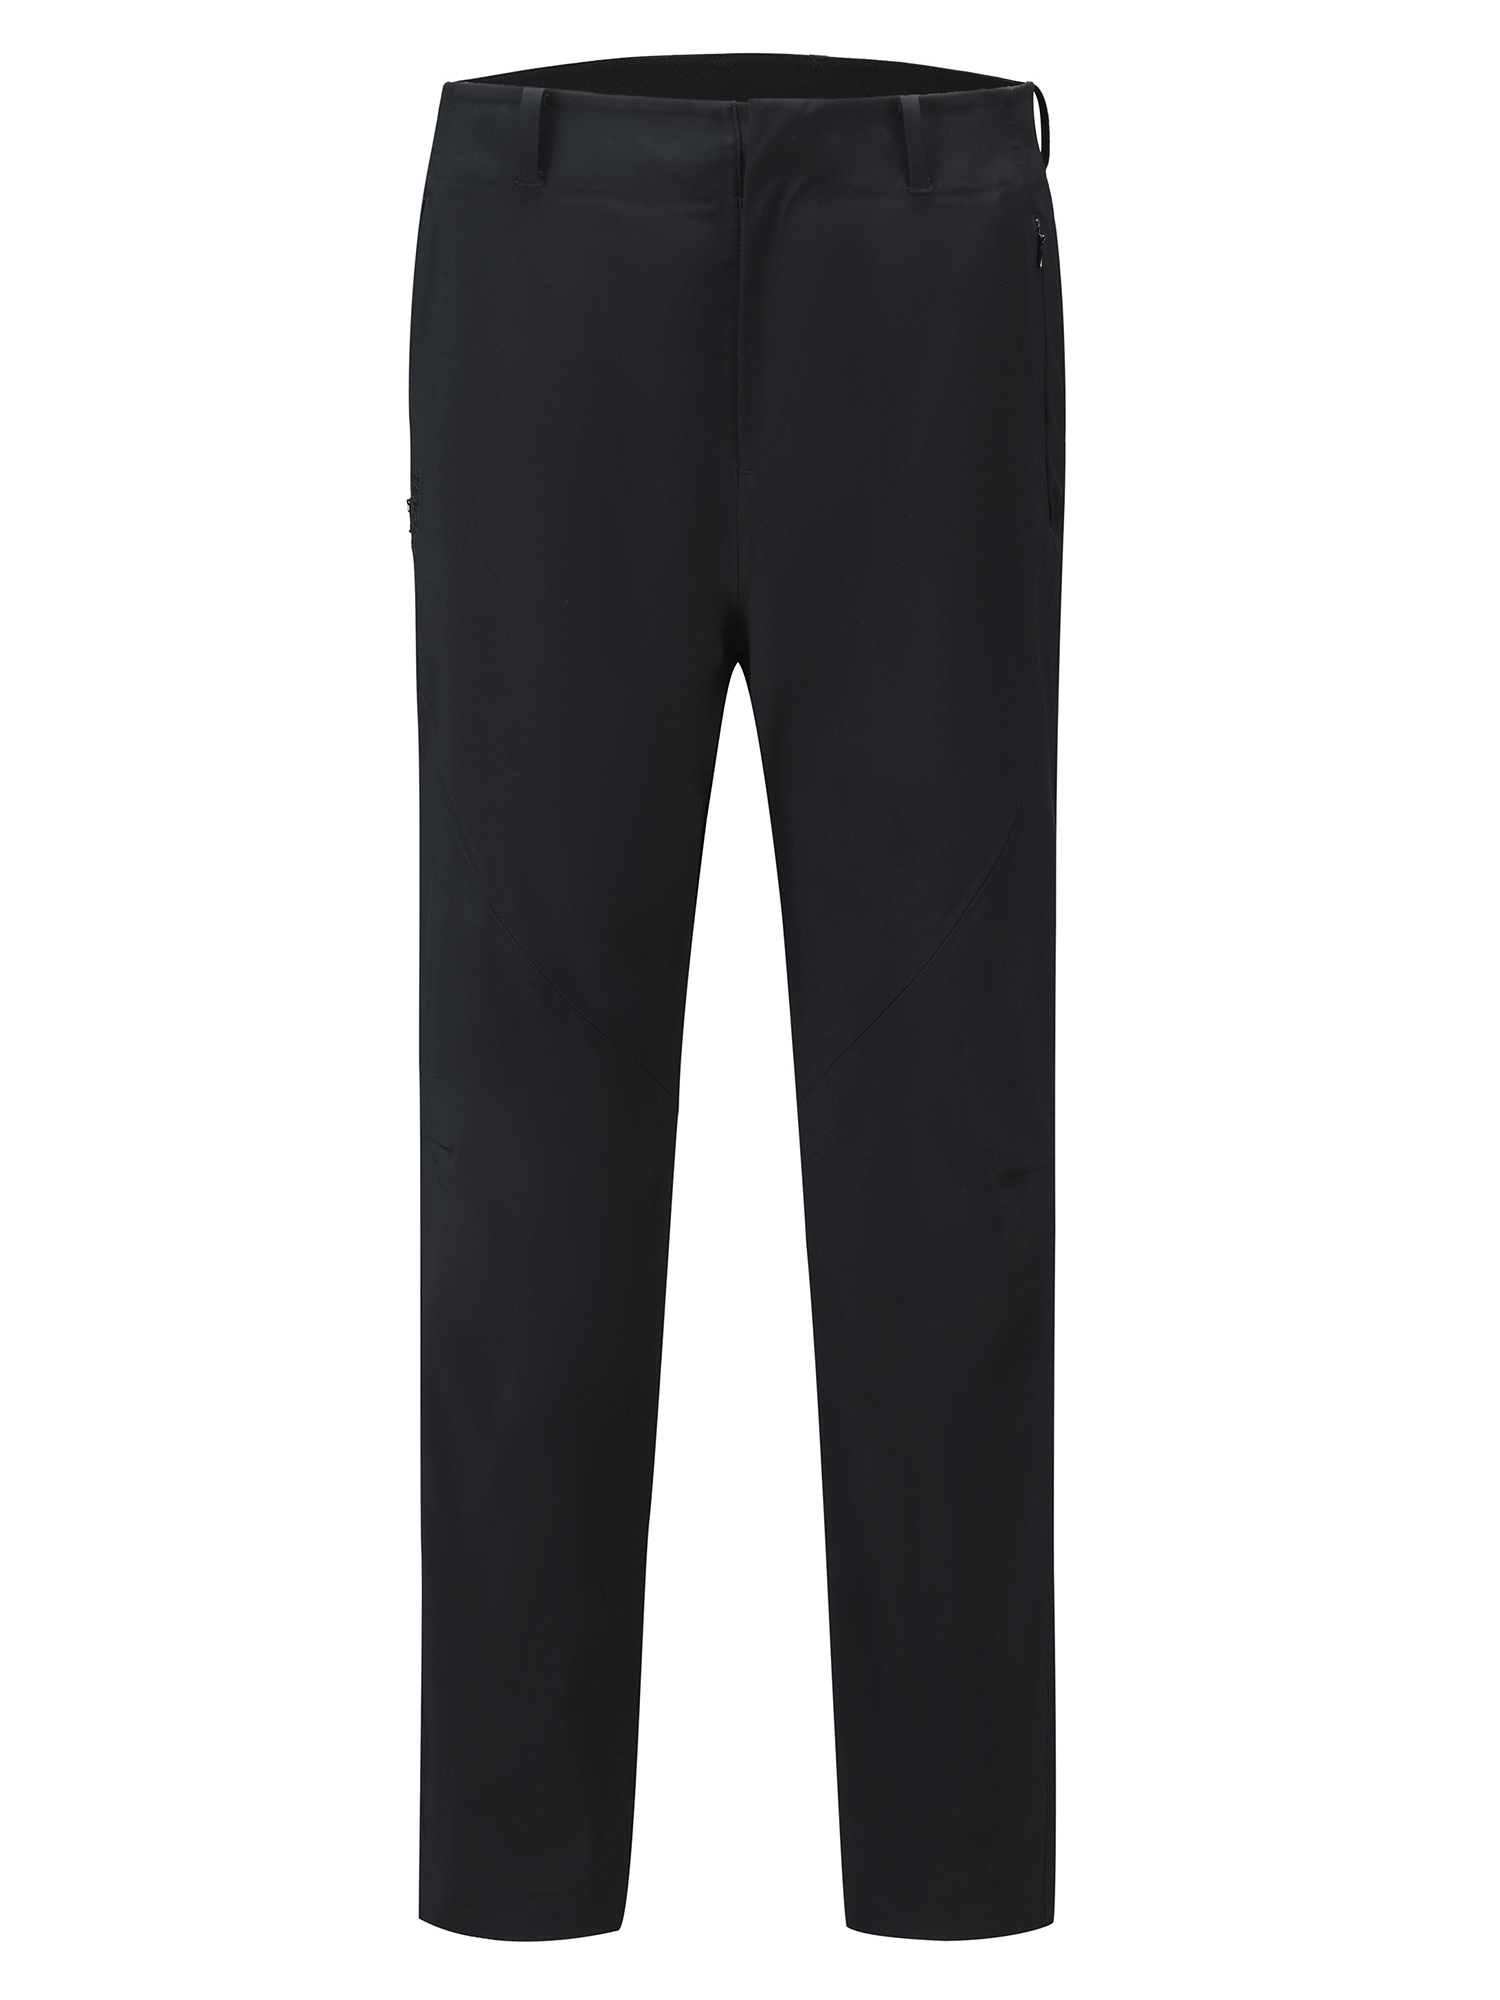 Спортивные брюки мужские Toread Men's Off-Road Softshell Trousers 81059 черные M